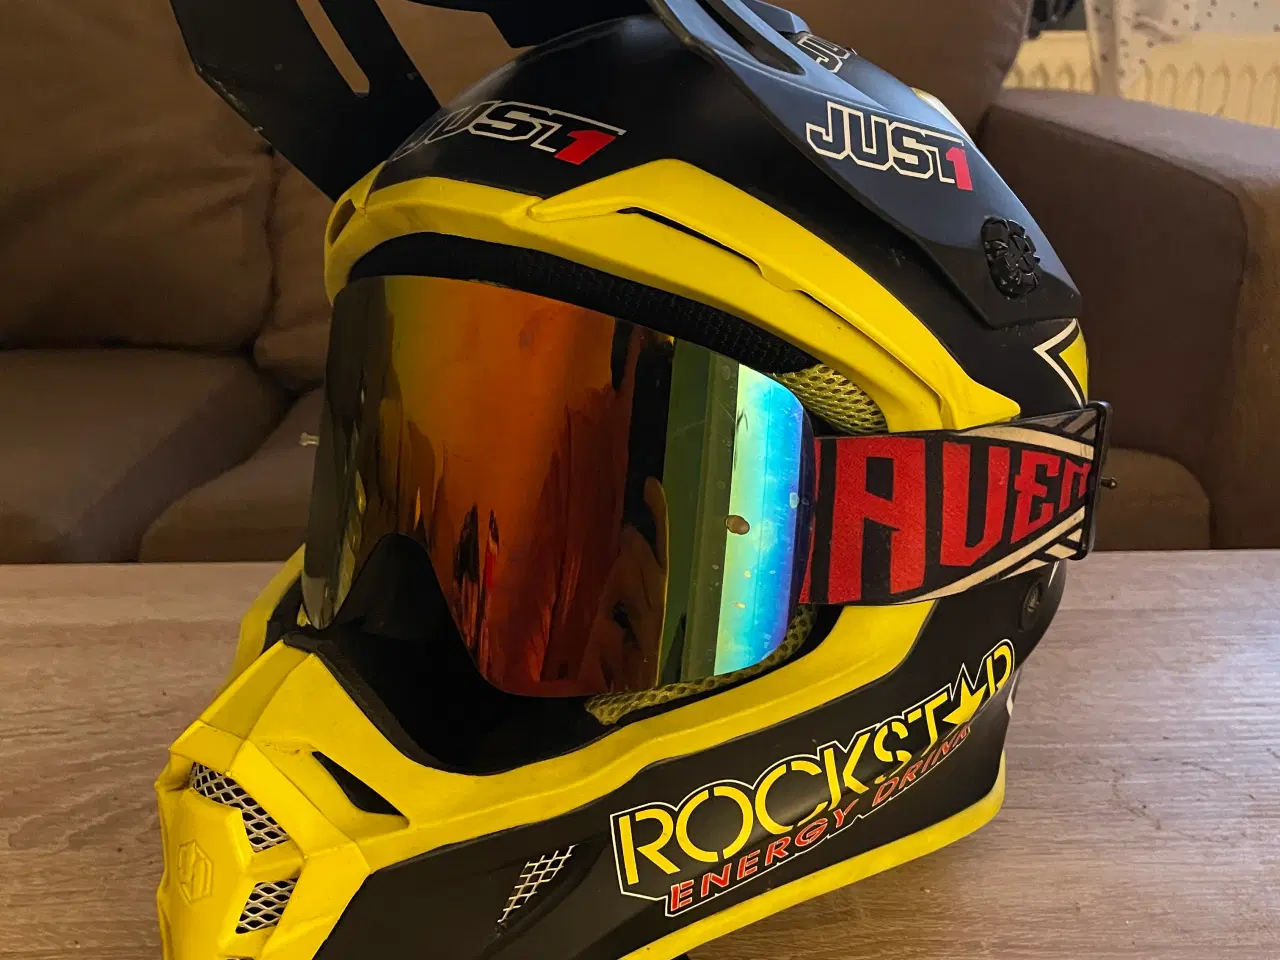 Billede 1 - Just1 Rockstar hjelm med briller